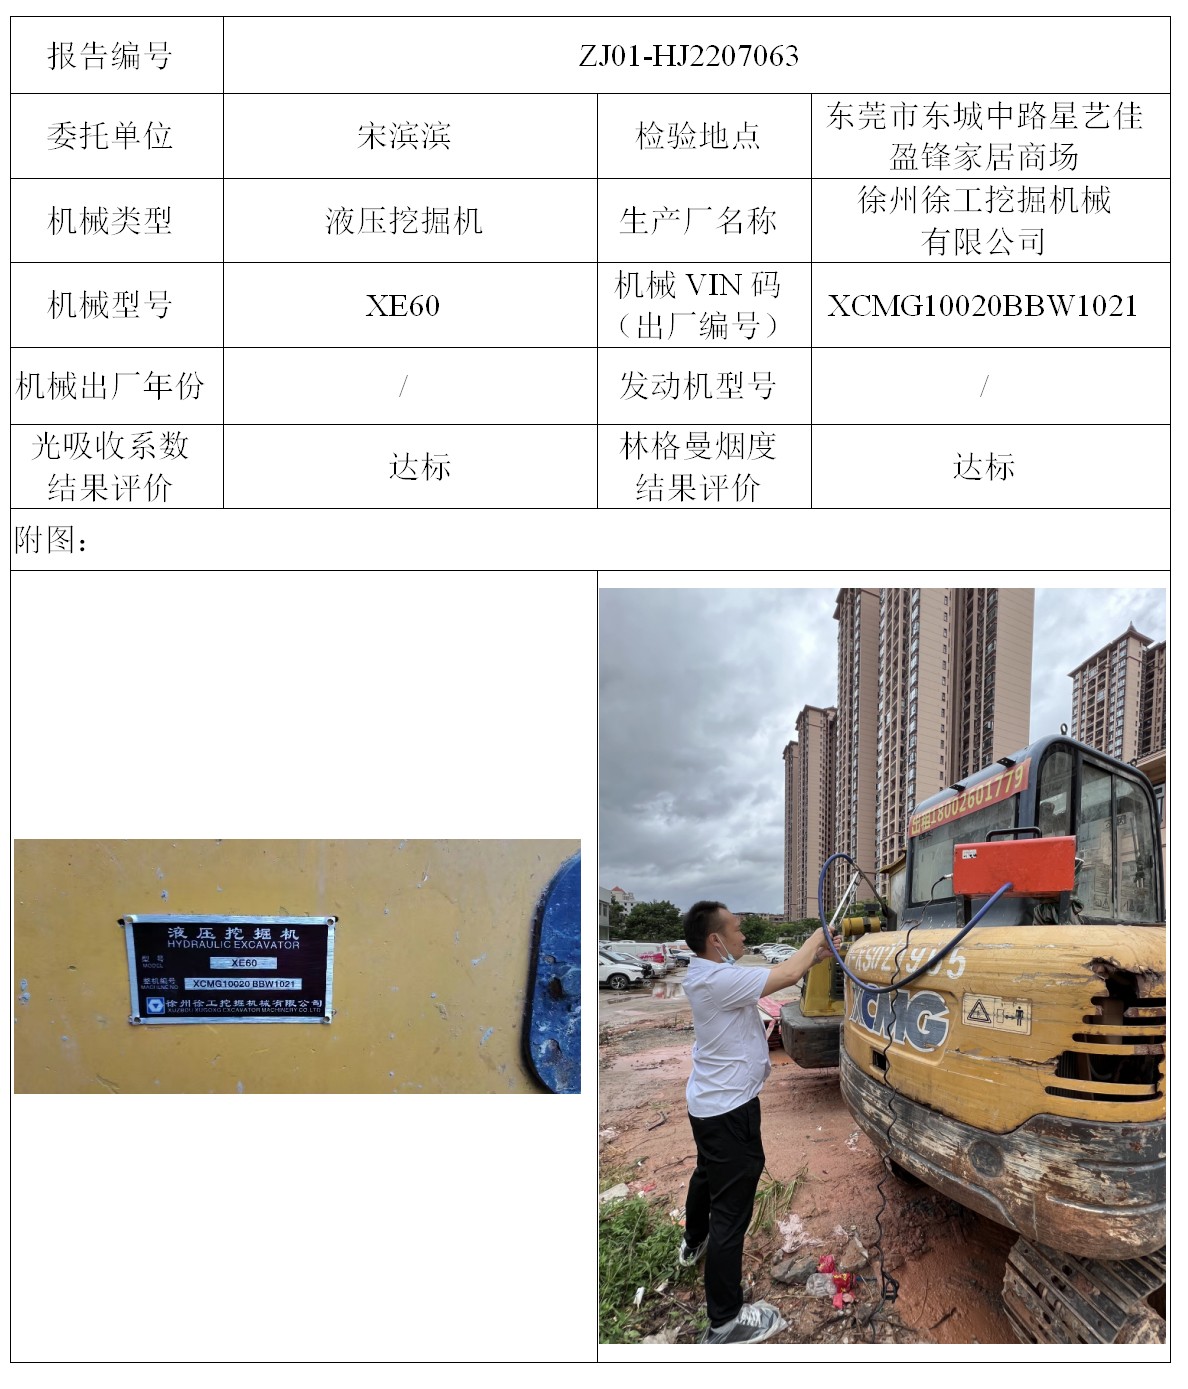 委托-ZJ01-HJ2207063宋滨滨的非道路机械设备（HJ20220368B)（叉车废气）二维码-张伟仪_01.jpg